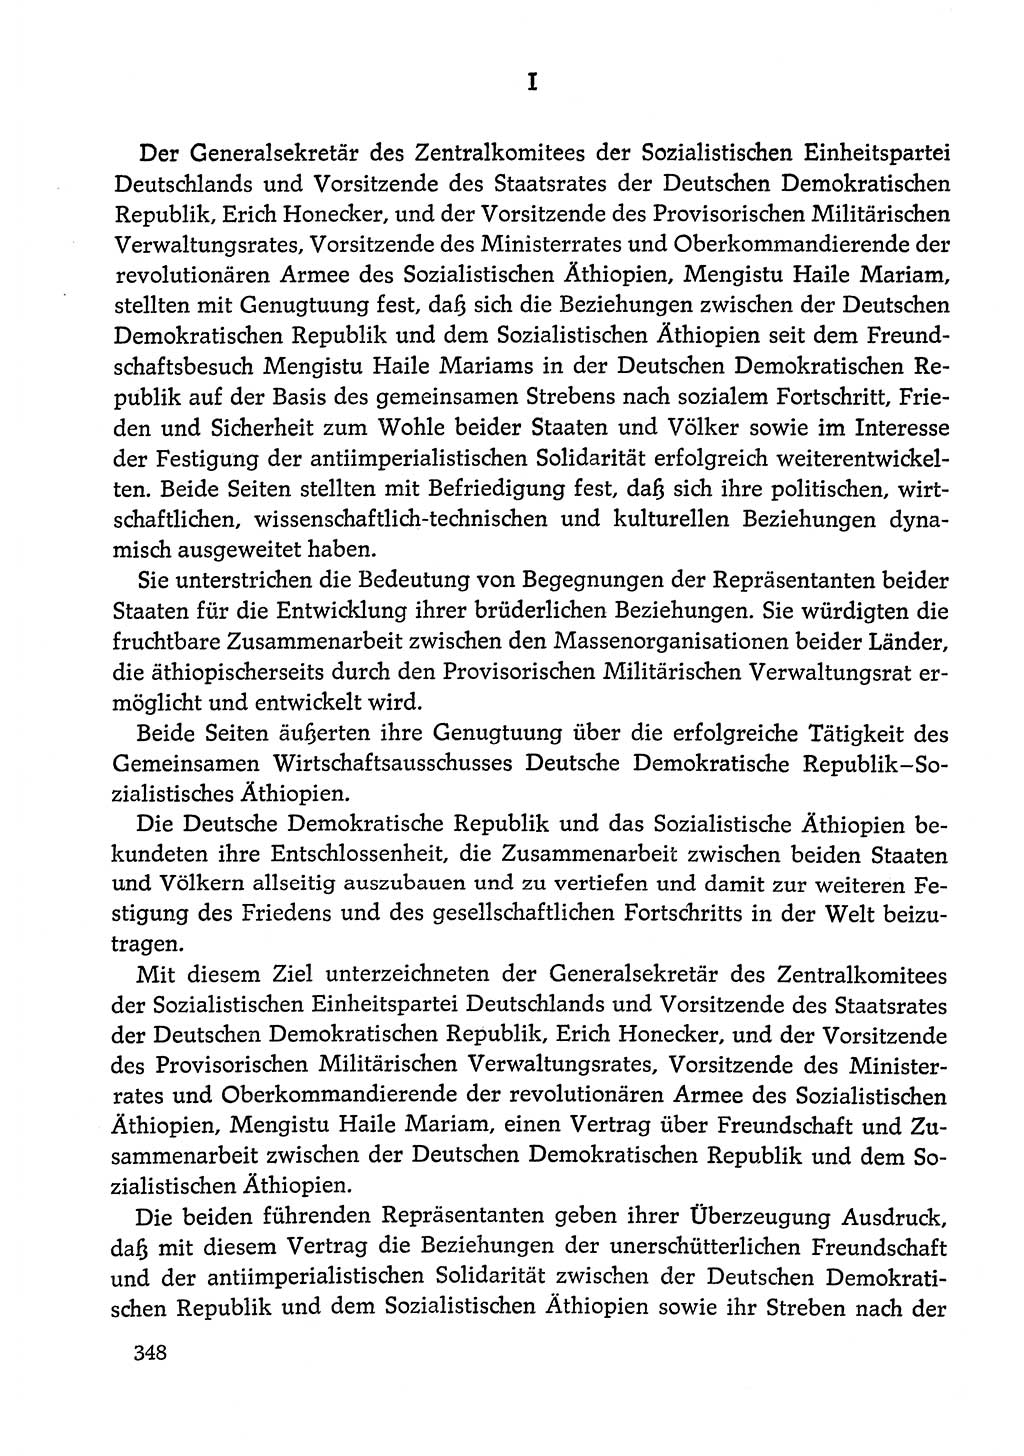 Dokumente der Sozialistischen Einheitspartei Deutschlands (SED) [Deutsche Demokratische Republik (DDR)] 1978-1979, Seite 348 (Dok. SED DDR 1978-1979, S. 348)